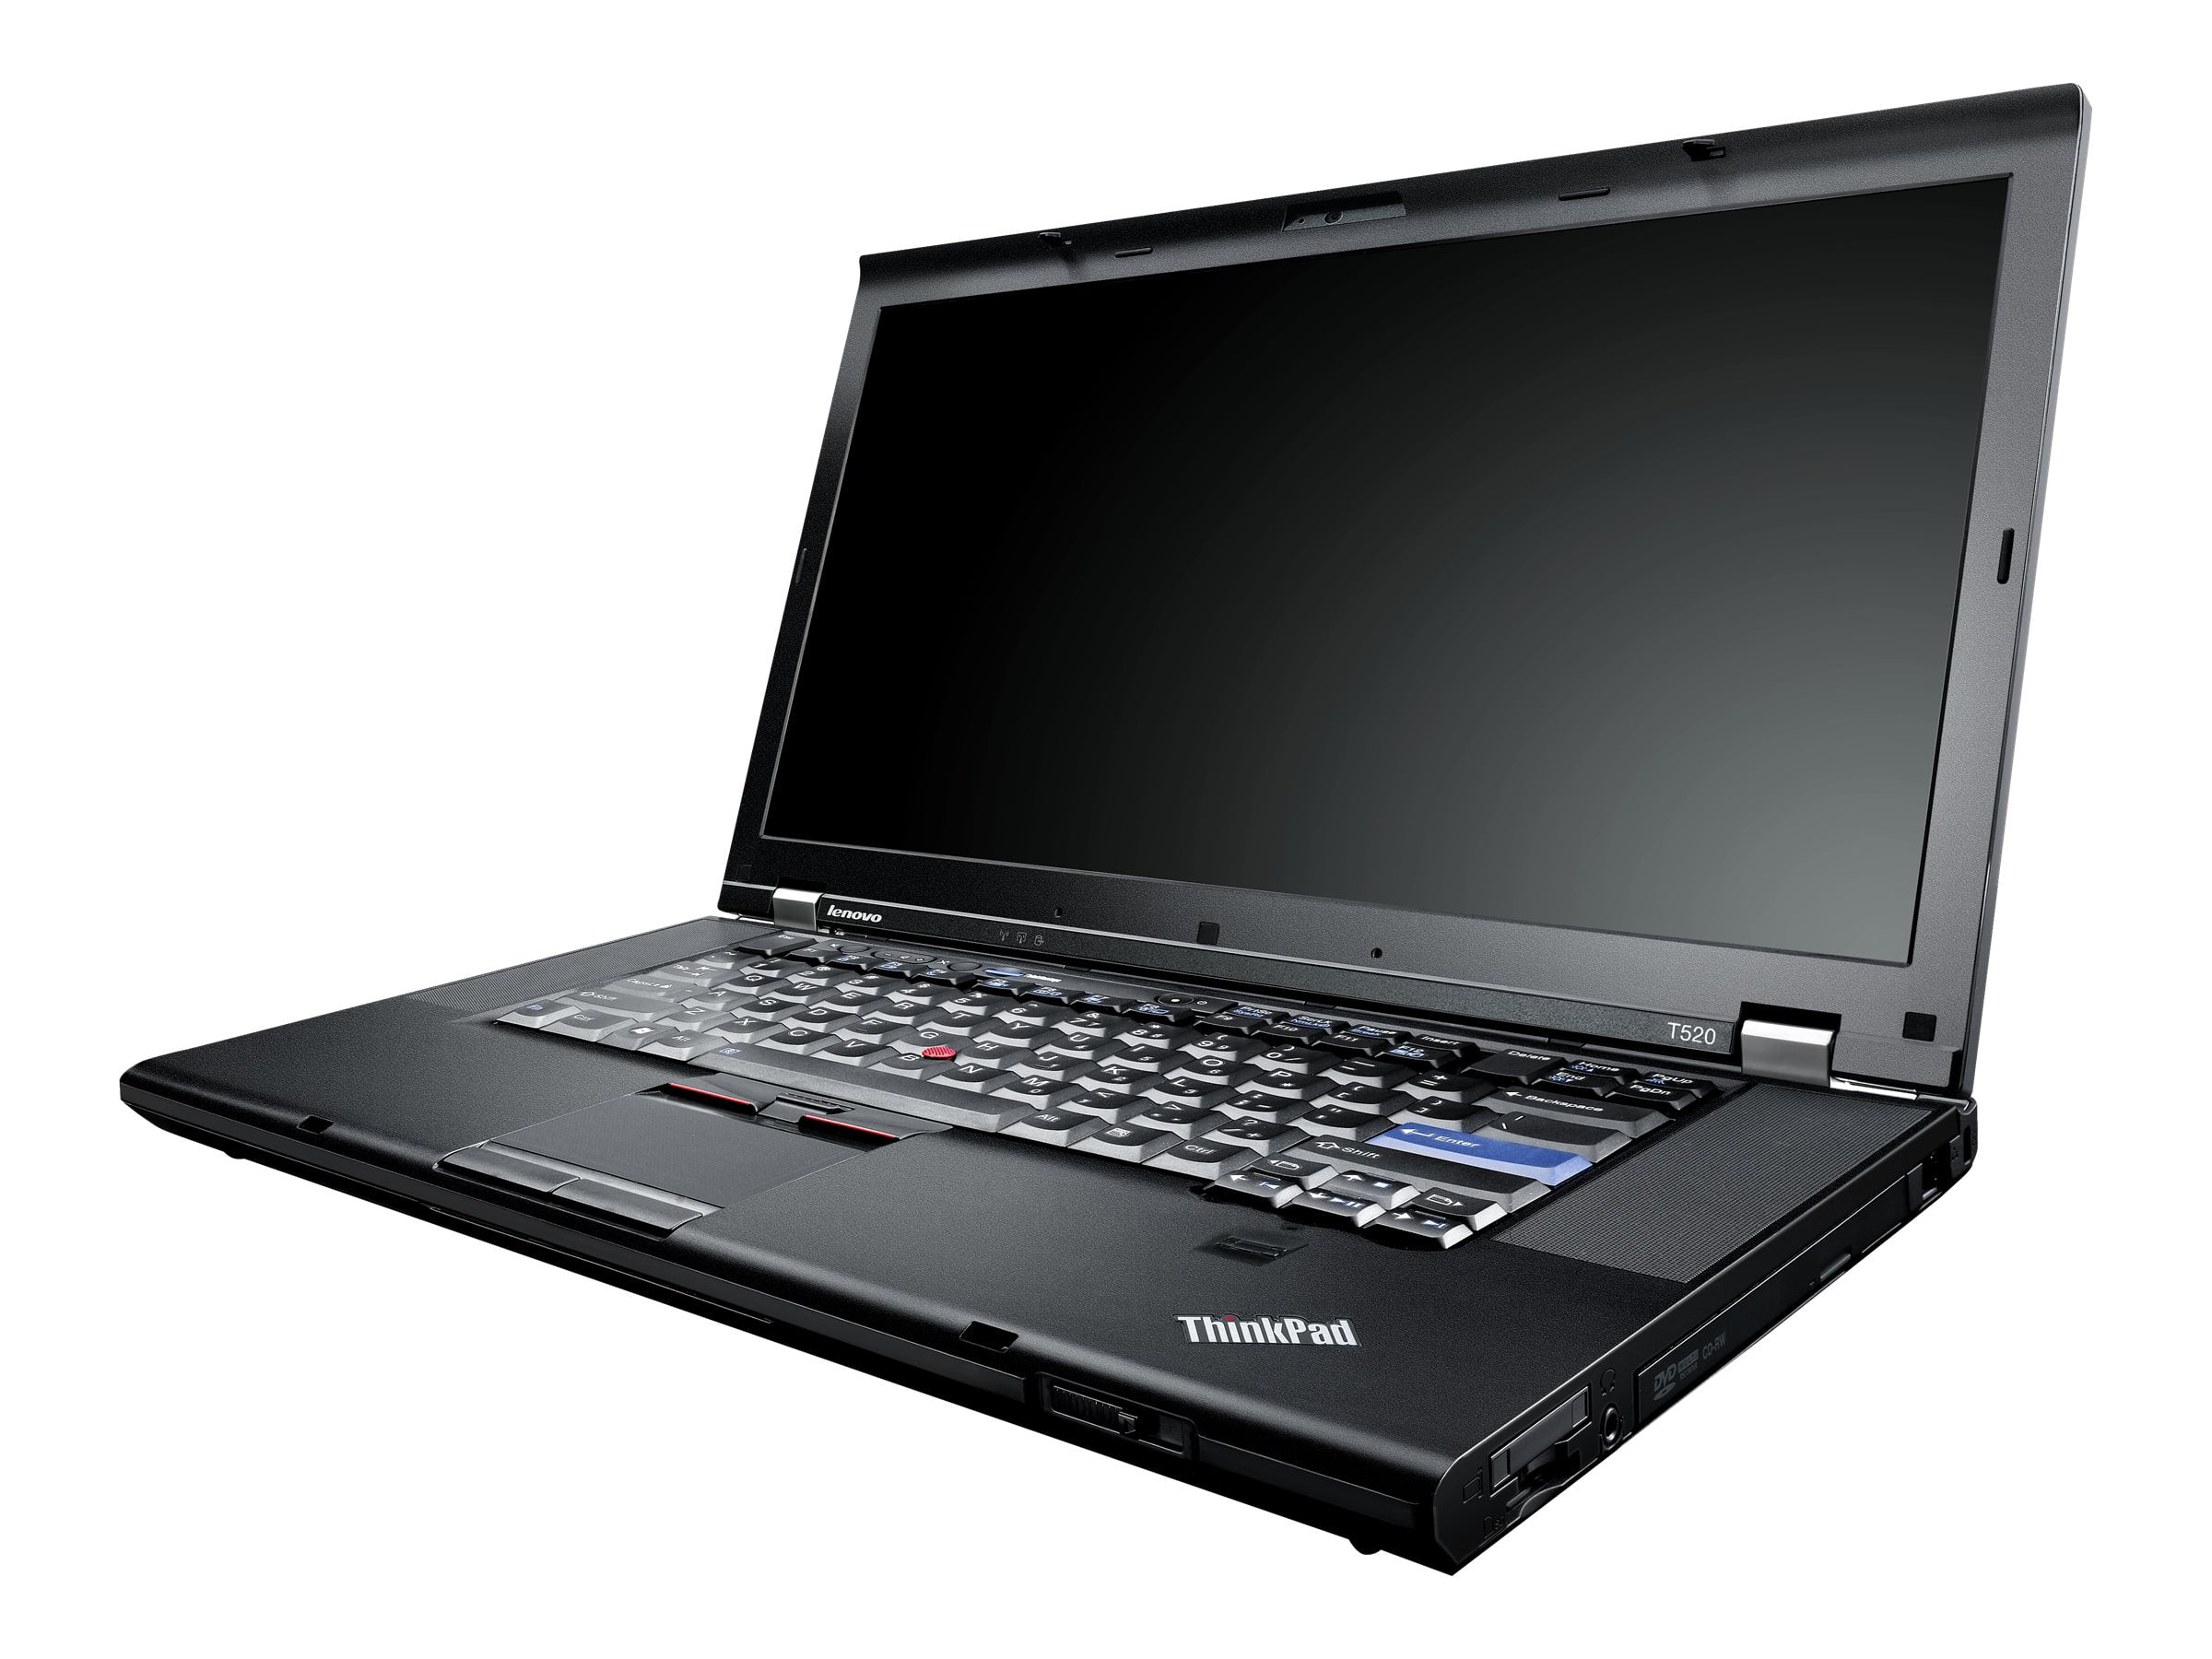 Lenovo ThinkPad T520 4239 - Intel Core i5 2520M / 2.5 GHz - vPro - Win 7 Pro 64-bit - HD Graphics 3000 - 4 GB - 320 GB HDD - DVD-Writer - 15.6" 1366 x 768 (HD) -